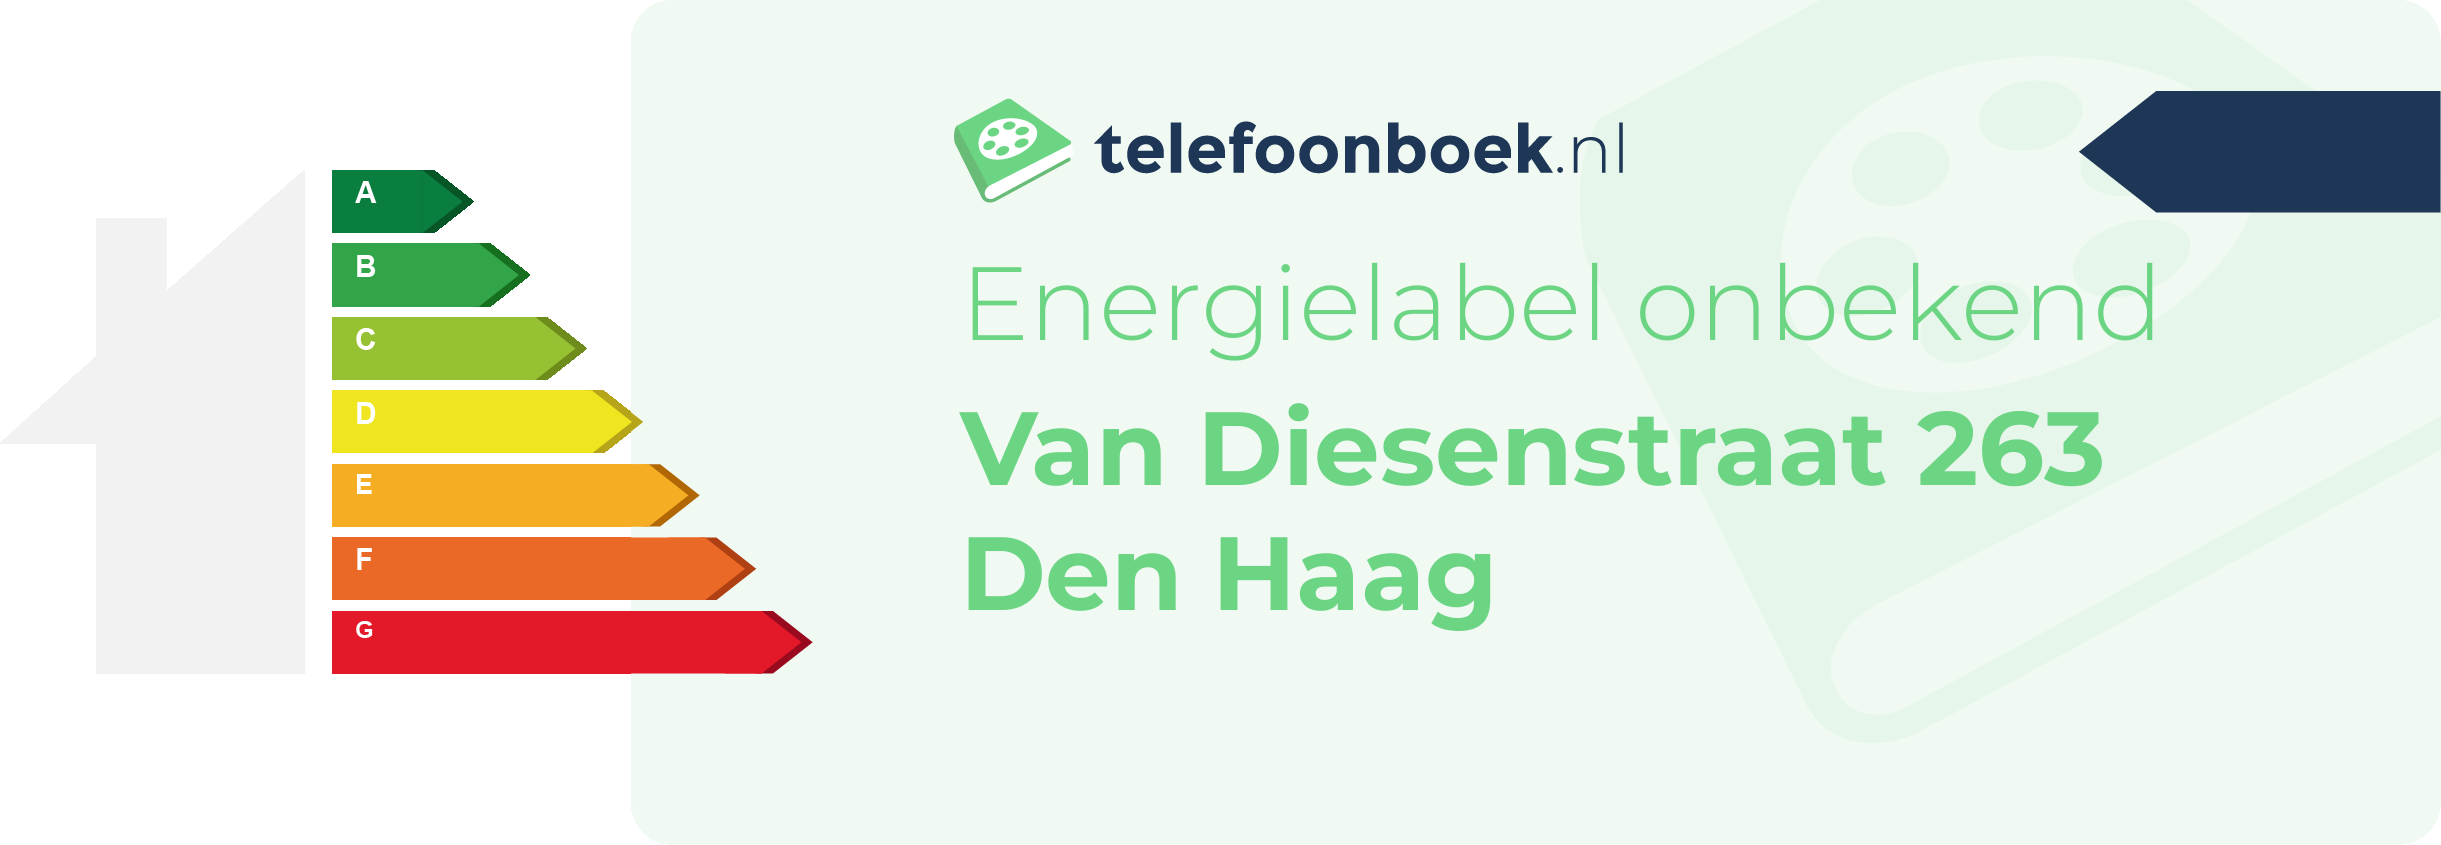 Energielabel Van Diesenstraat 263 Den Haag